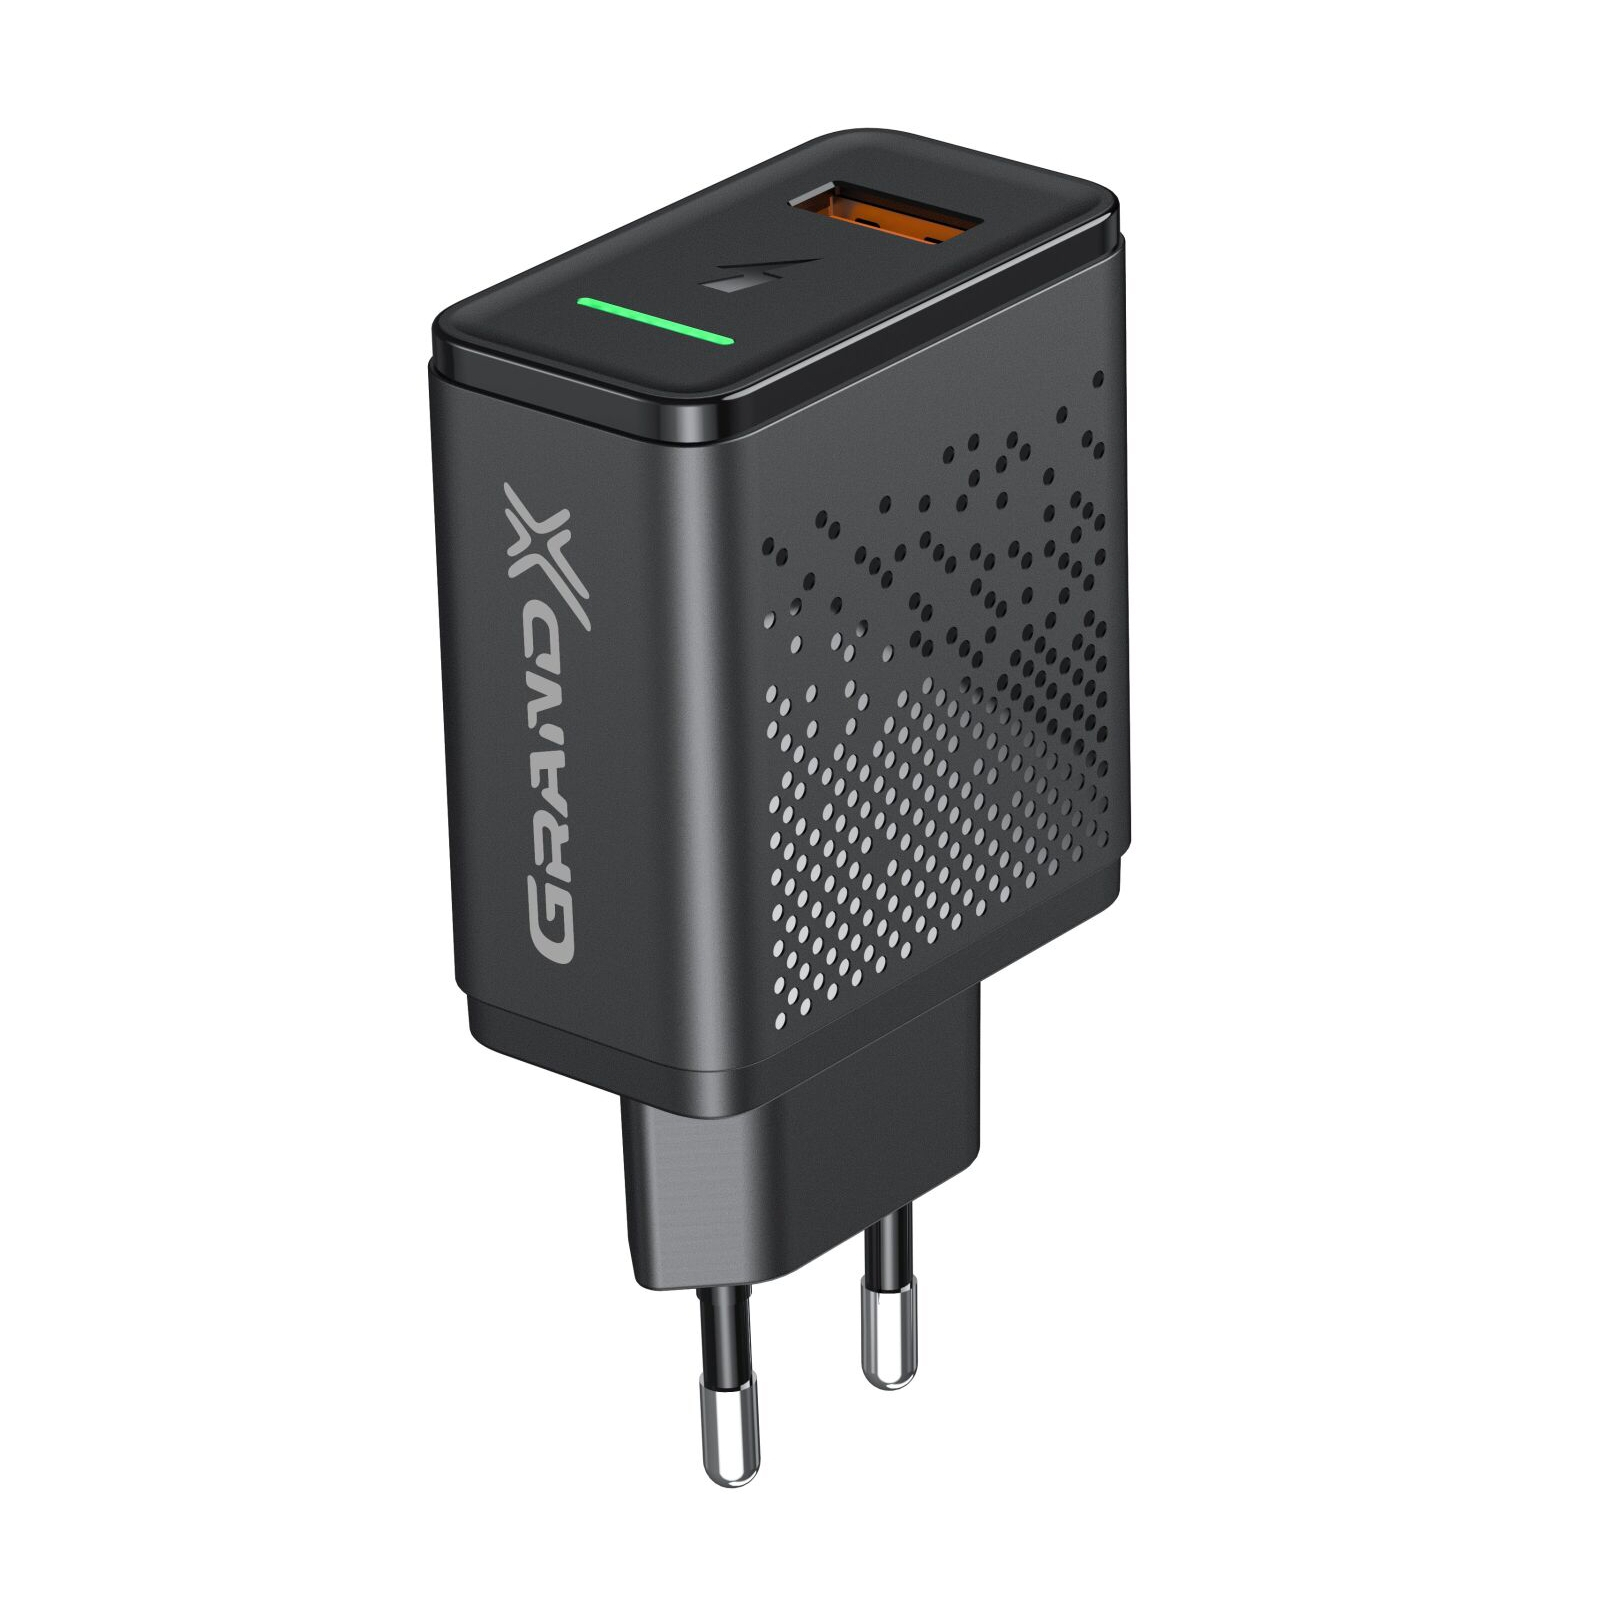 Зарядний пристрій Grand-X Fast Charge 5-в-1 QC 3.0, AFC, SCP,FCP, VOOC, 1 USB 22.5W (CH-850) зображення 4